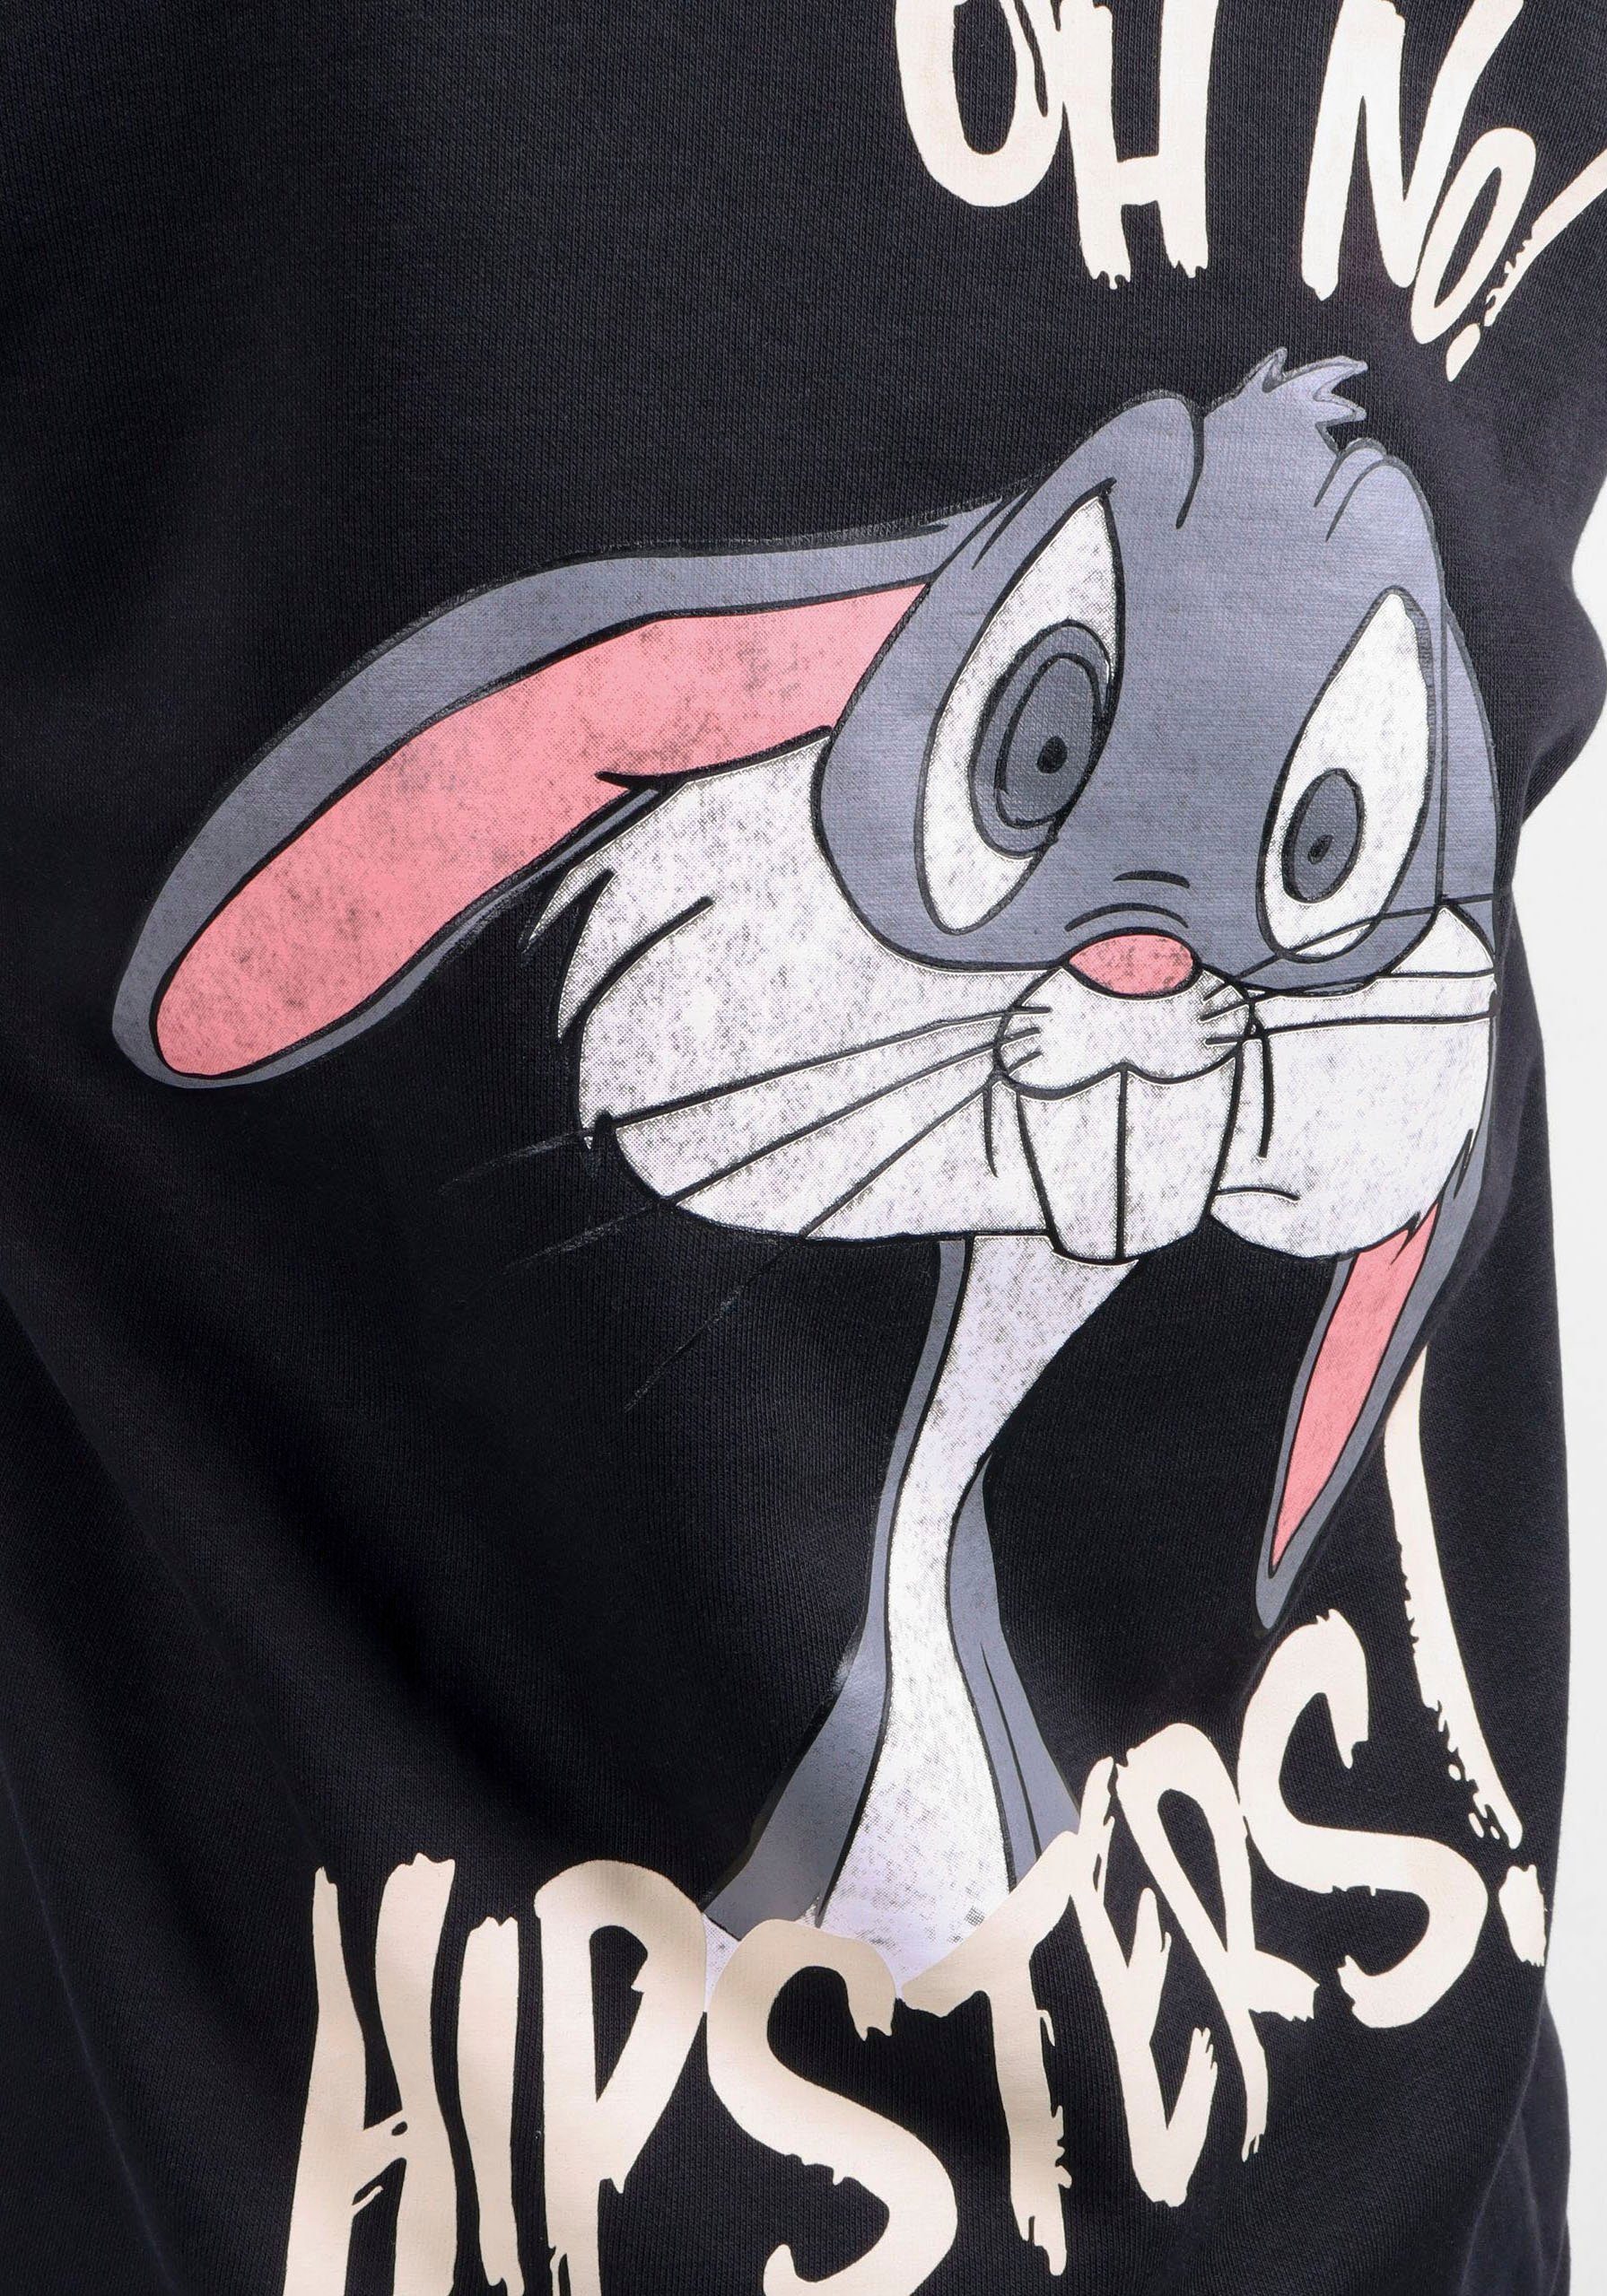 Hoodie New Design. Druck York Capelli Bugs Bunny Vorder auf Rückseite. und Lizenz